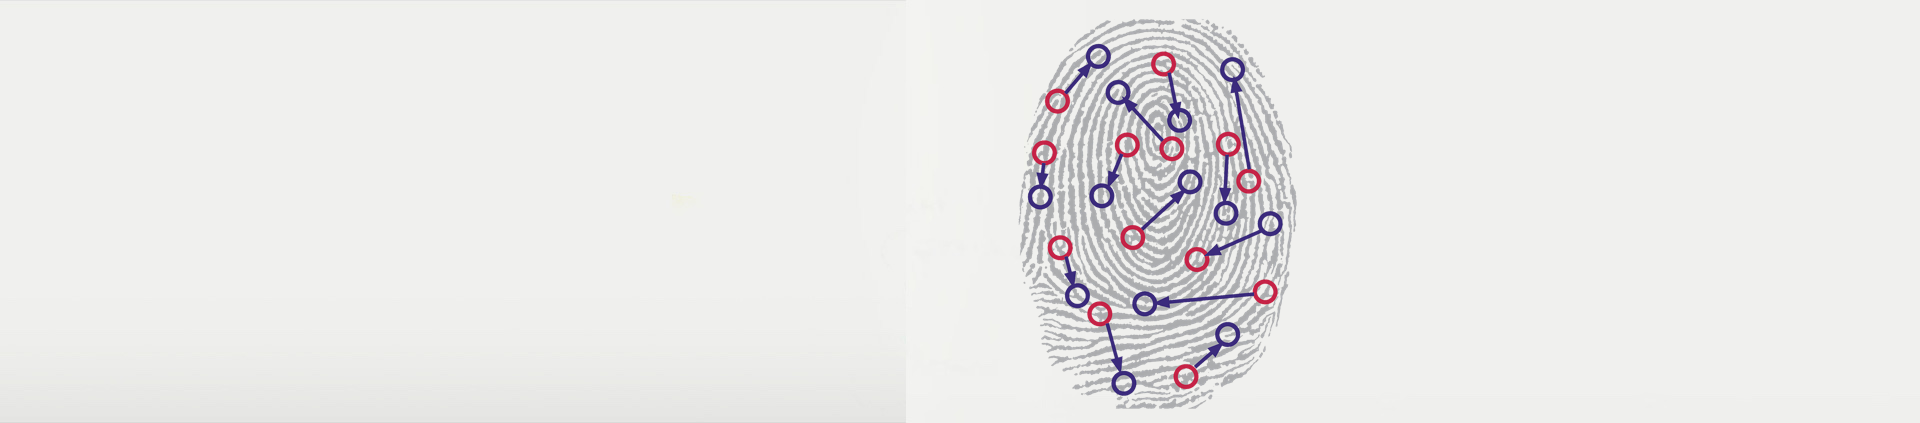 biometric-fingerprint.png